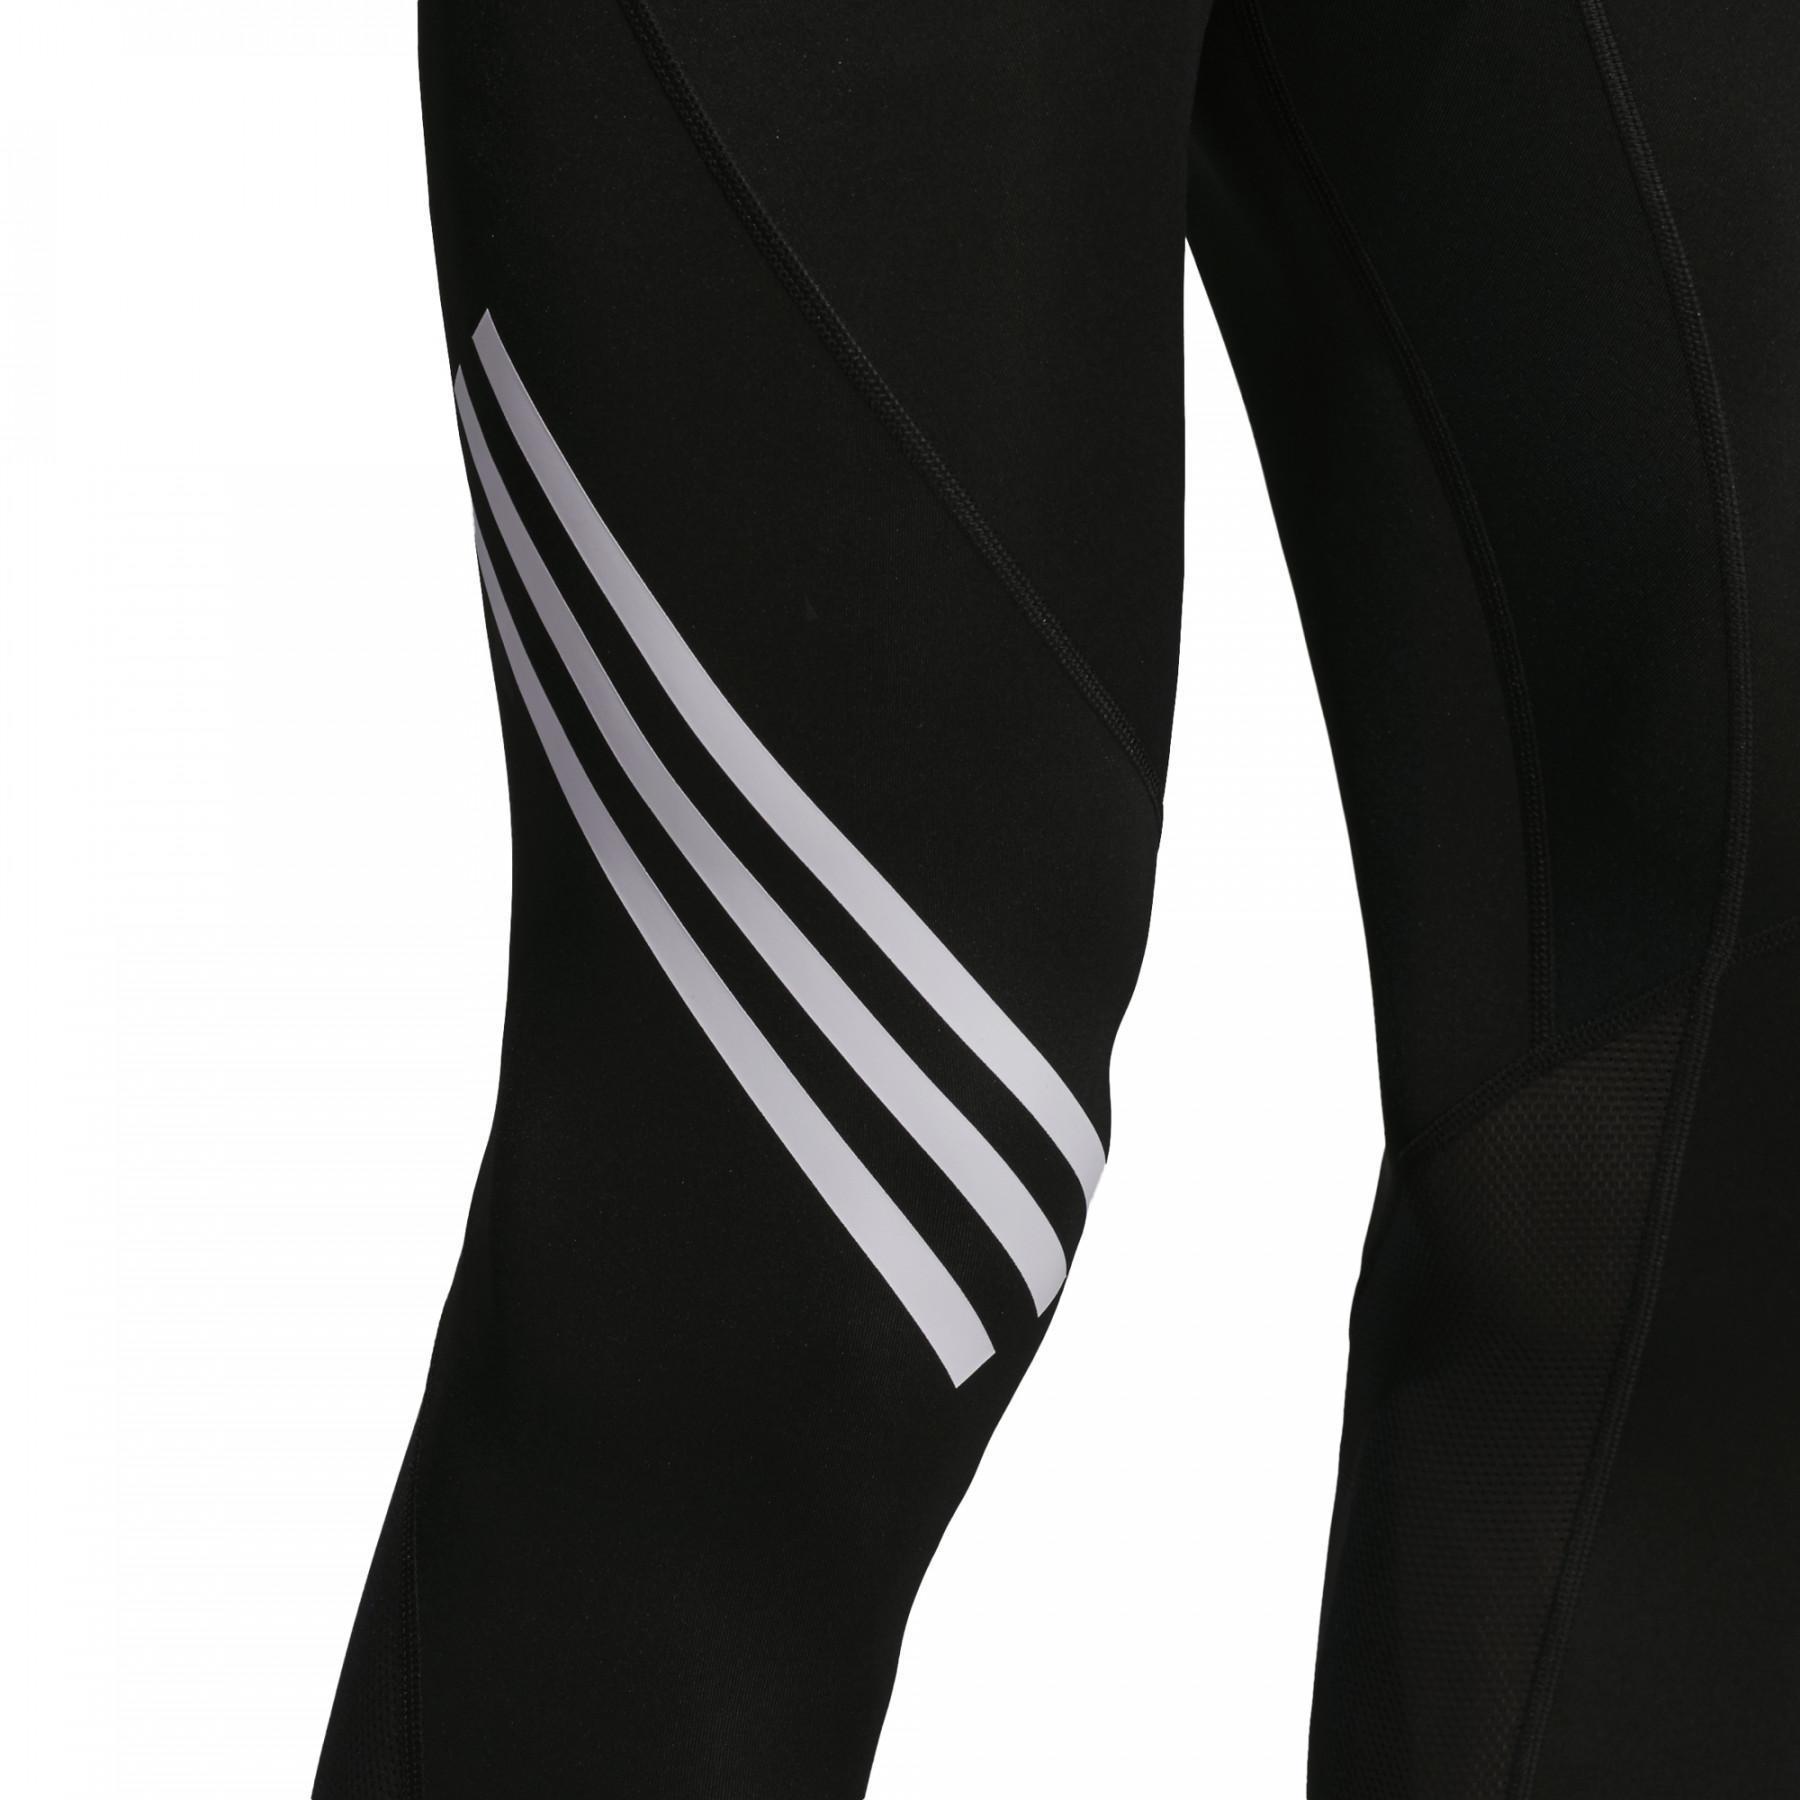 Panty adidas Alphaskin Sport+ 3-Stripes